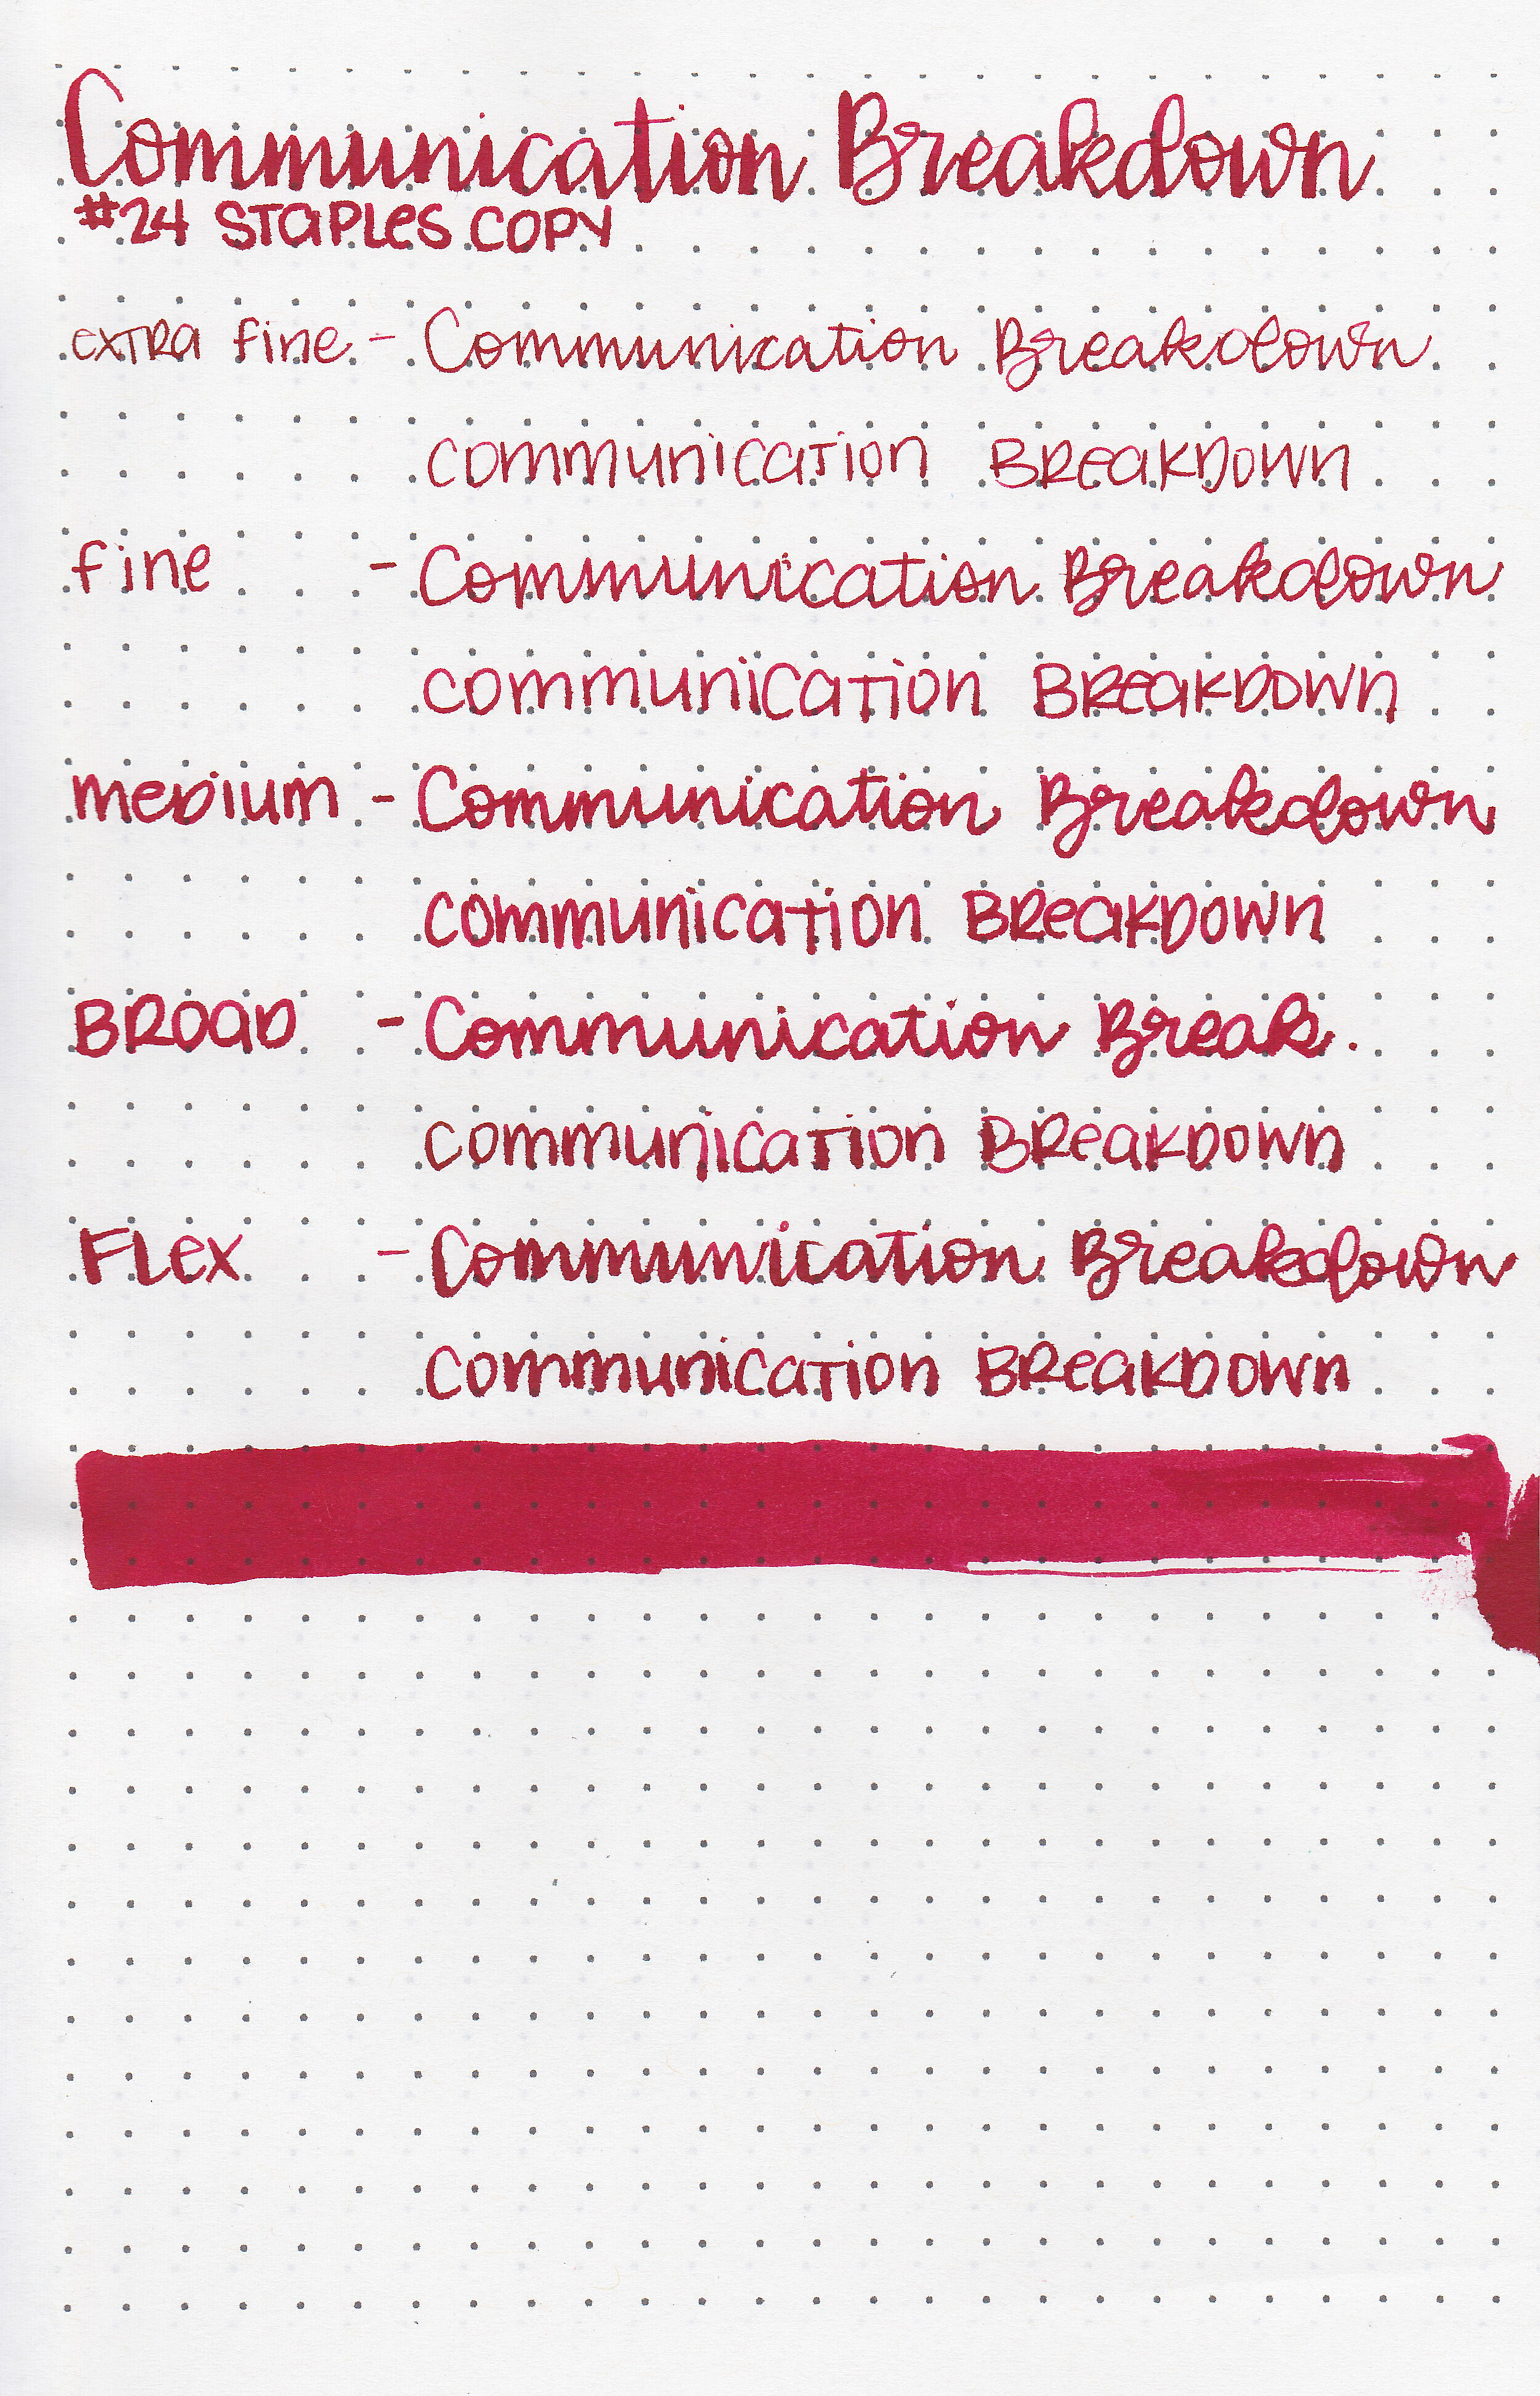 d-communication-breakdown-9.jpg